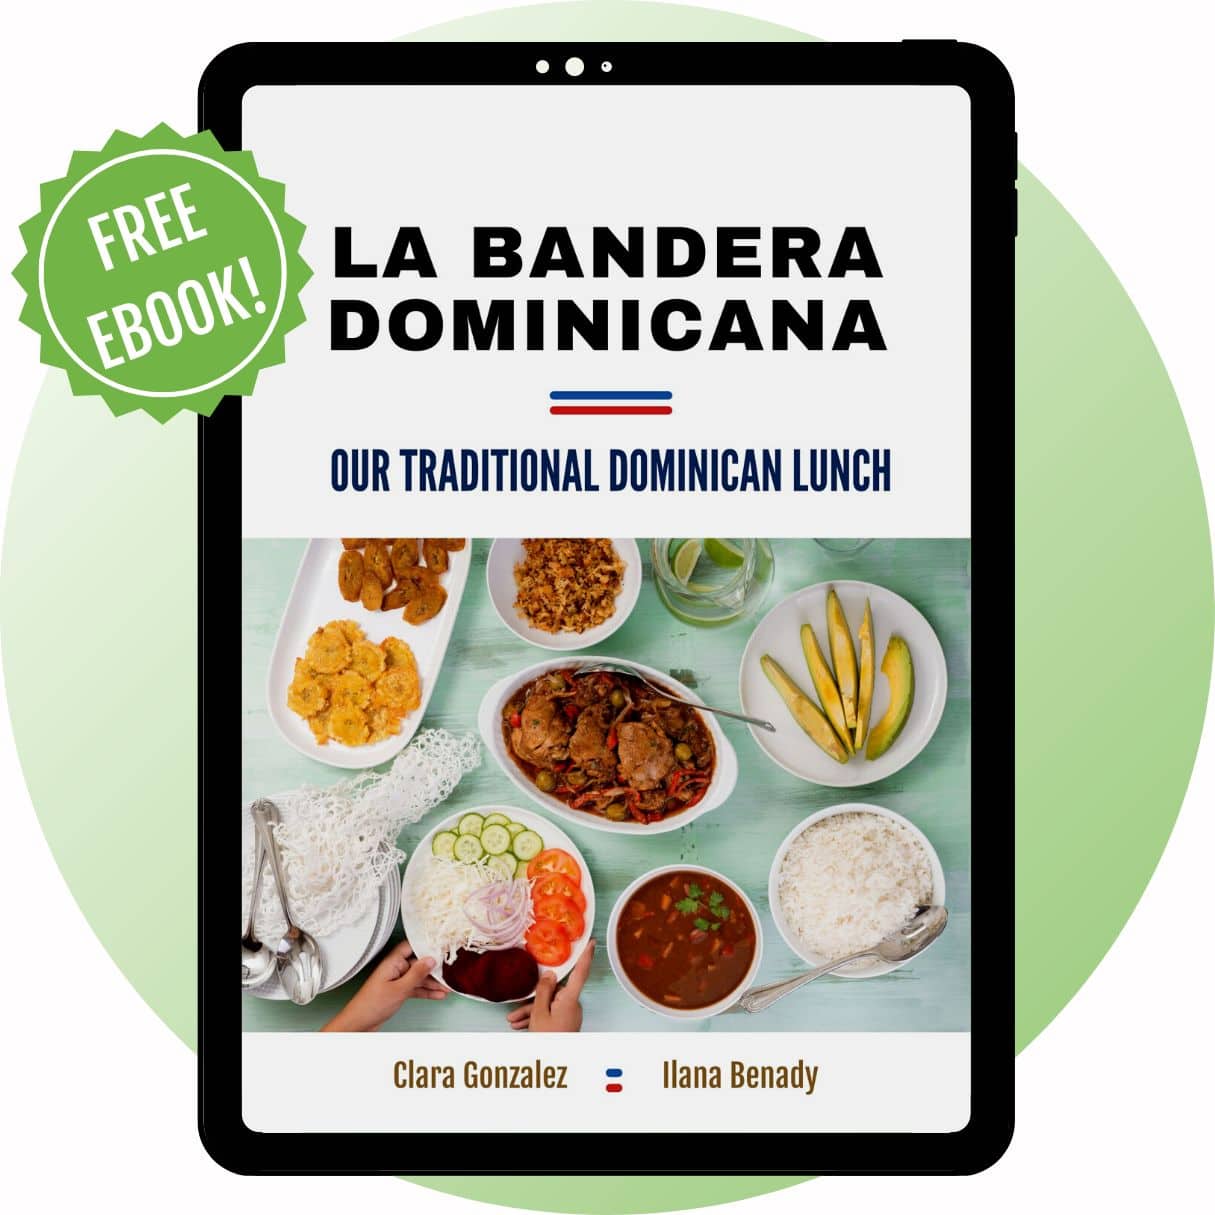 La Bandera Dominicana free ebook.